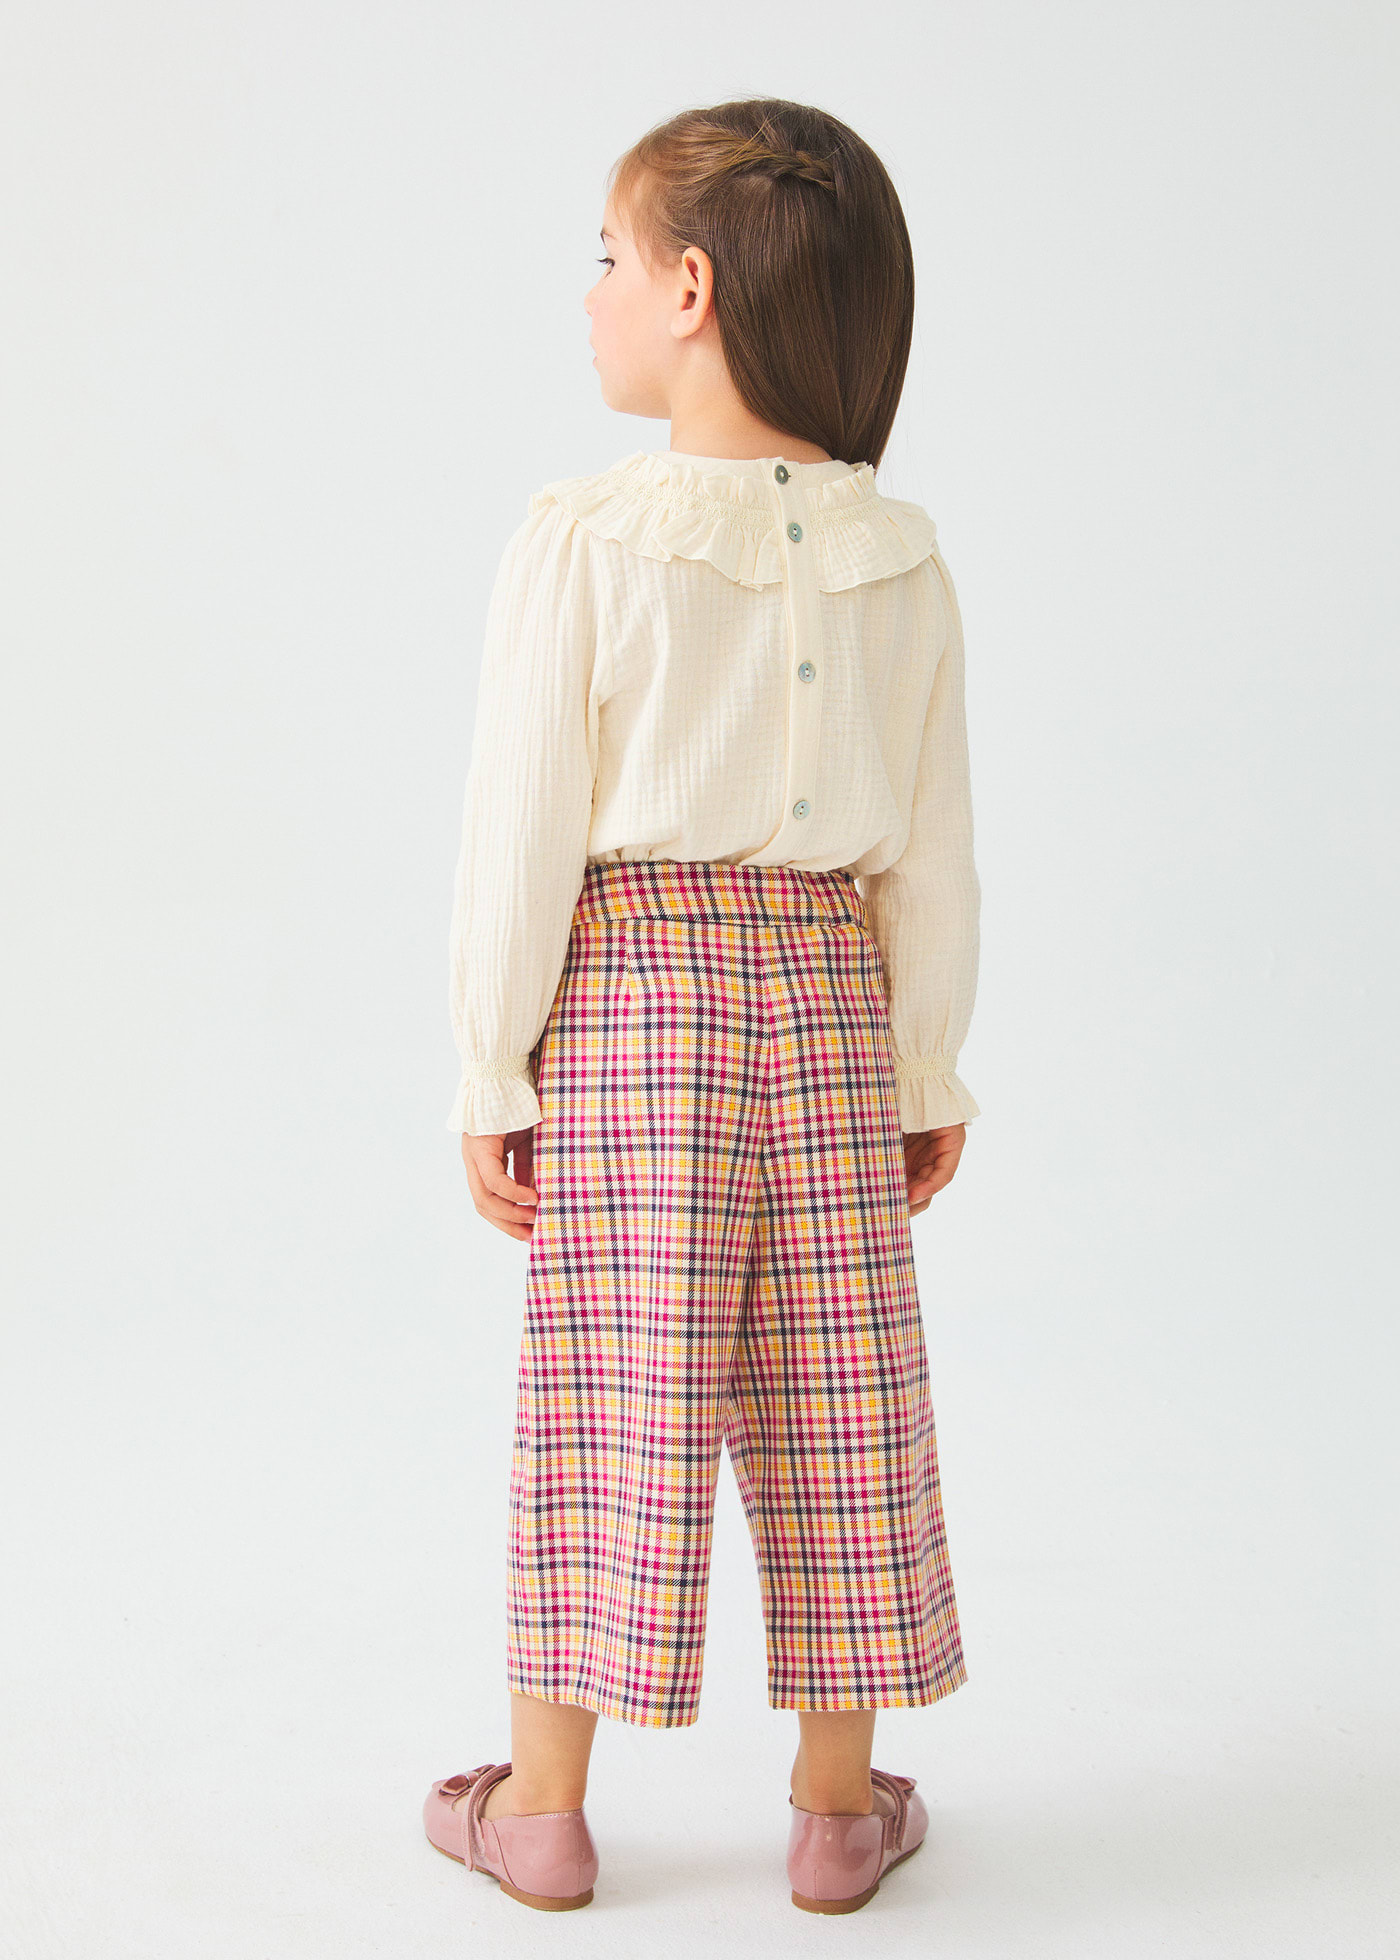 Pantalone modello culotte quadri bambina